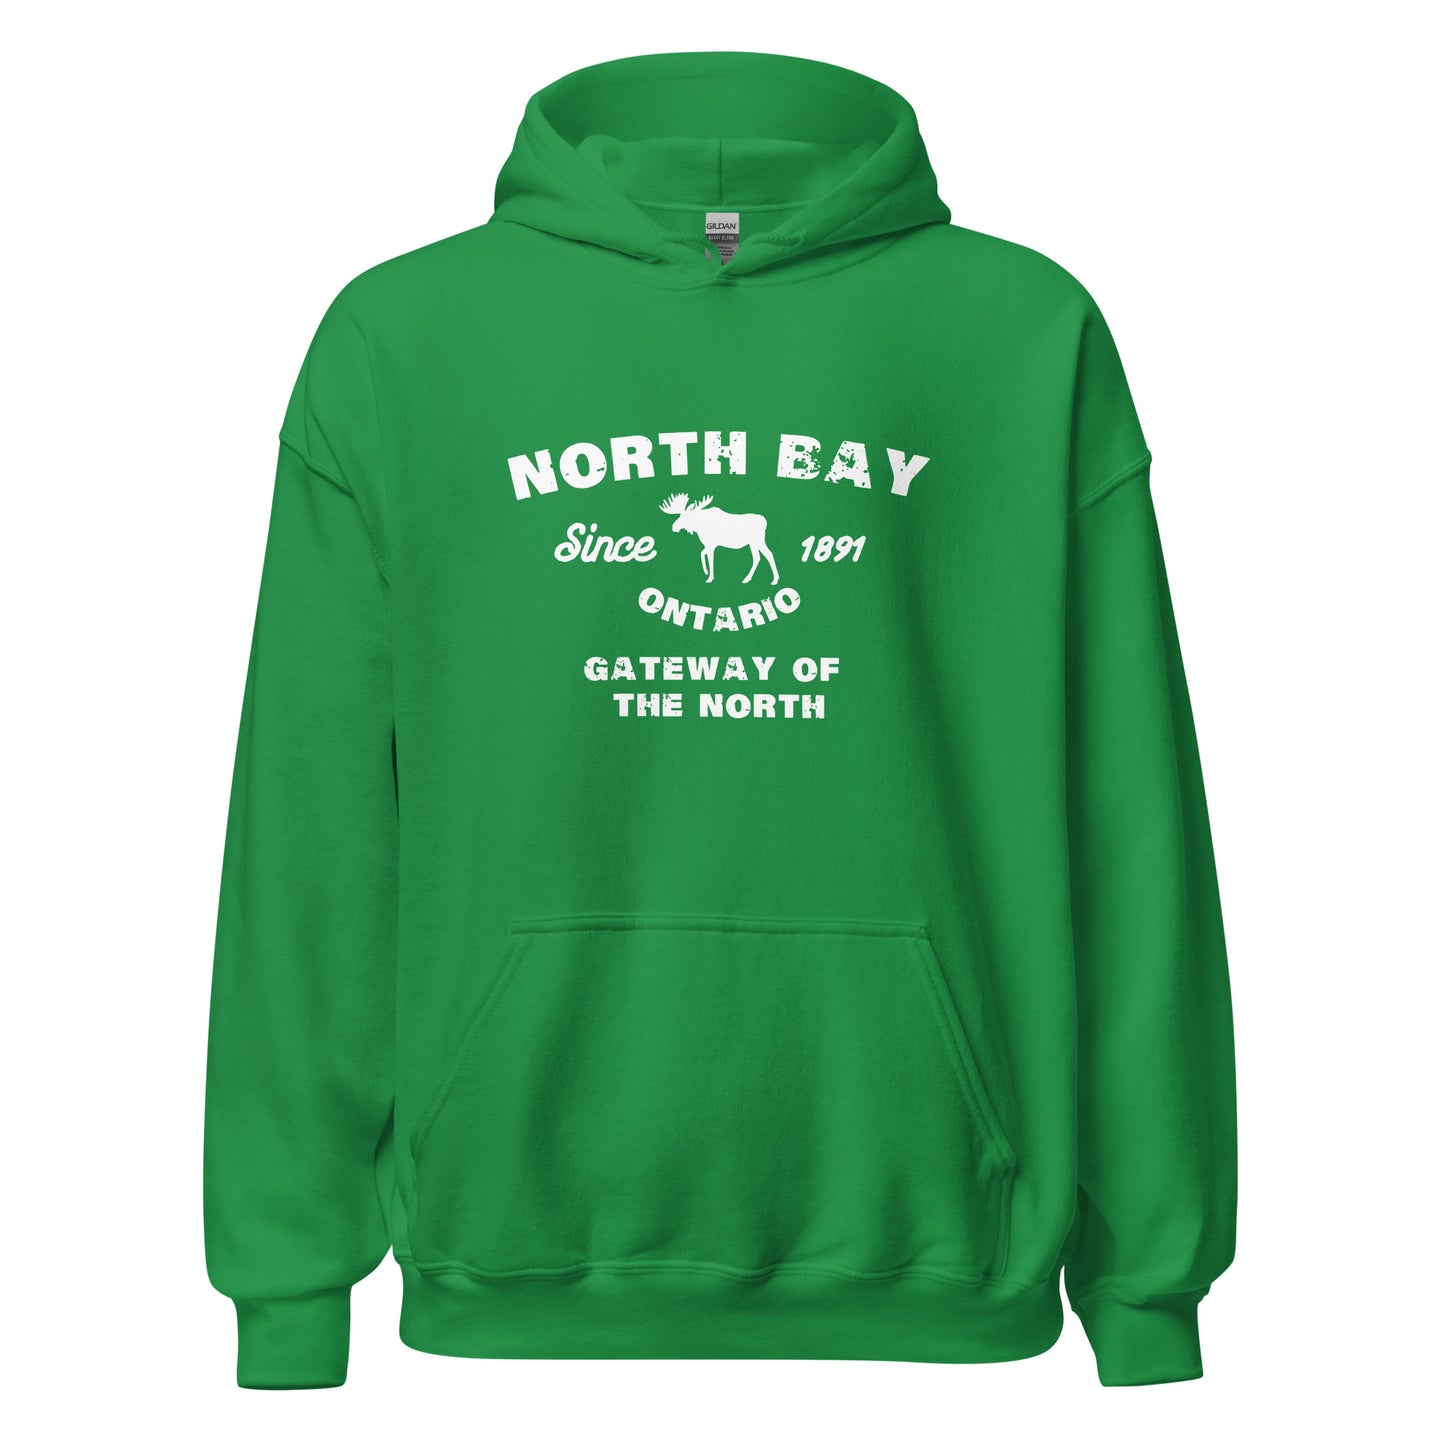 Canadian City Hoodie, North Bay, Ontario, Moose Design, Gateway of the North, Men's Hoodie